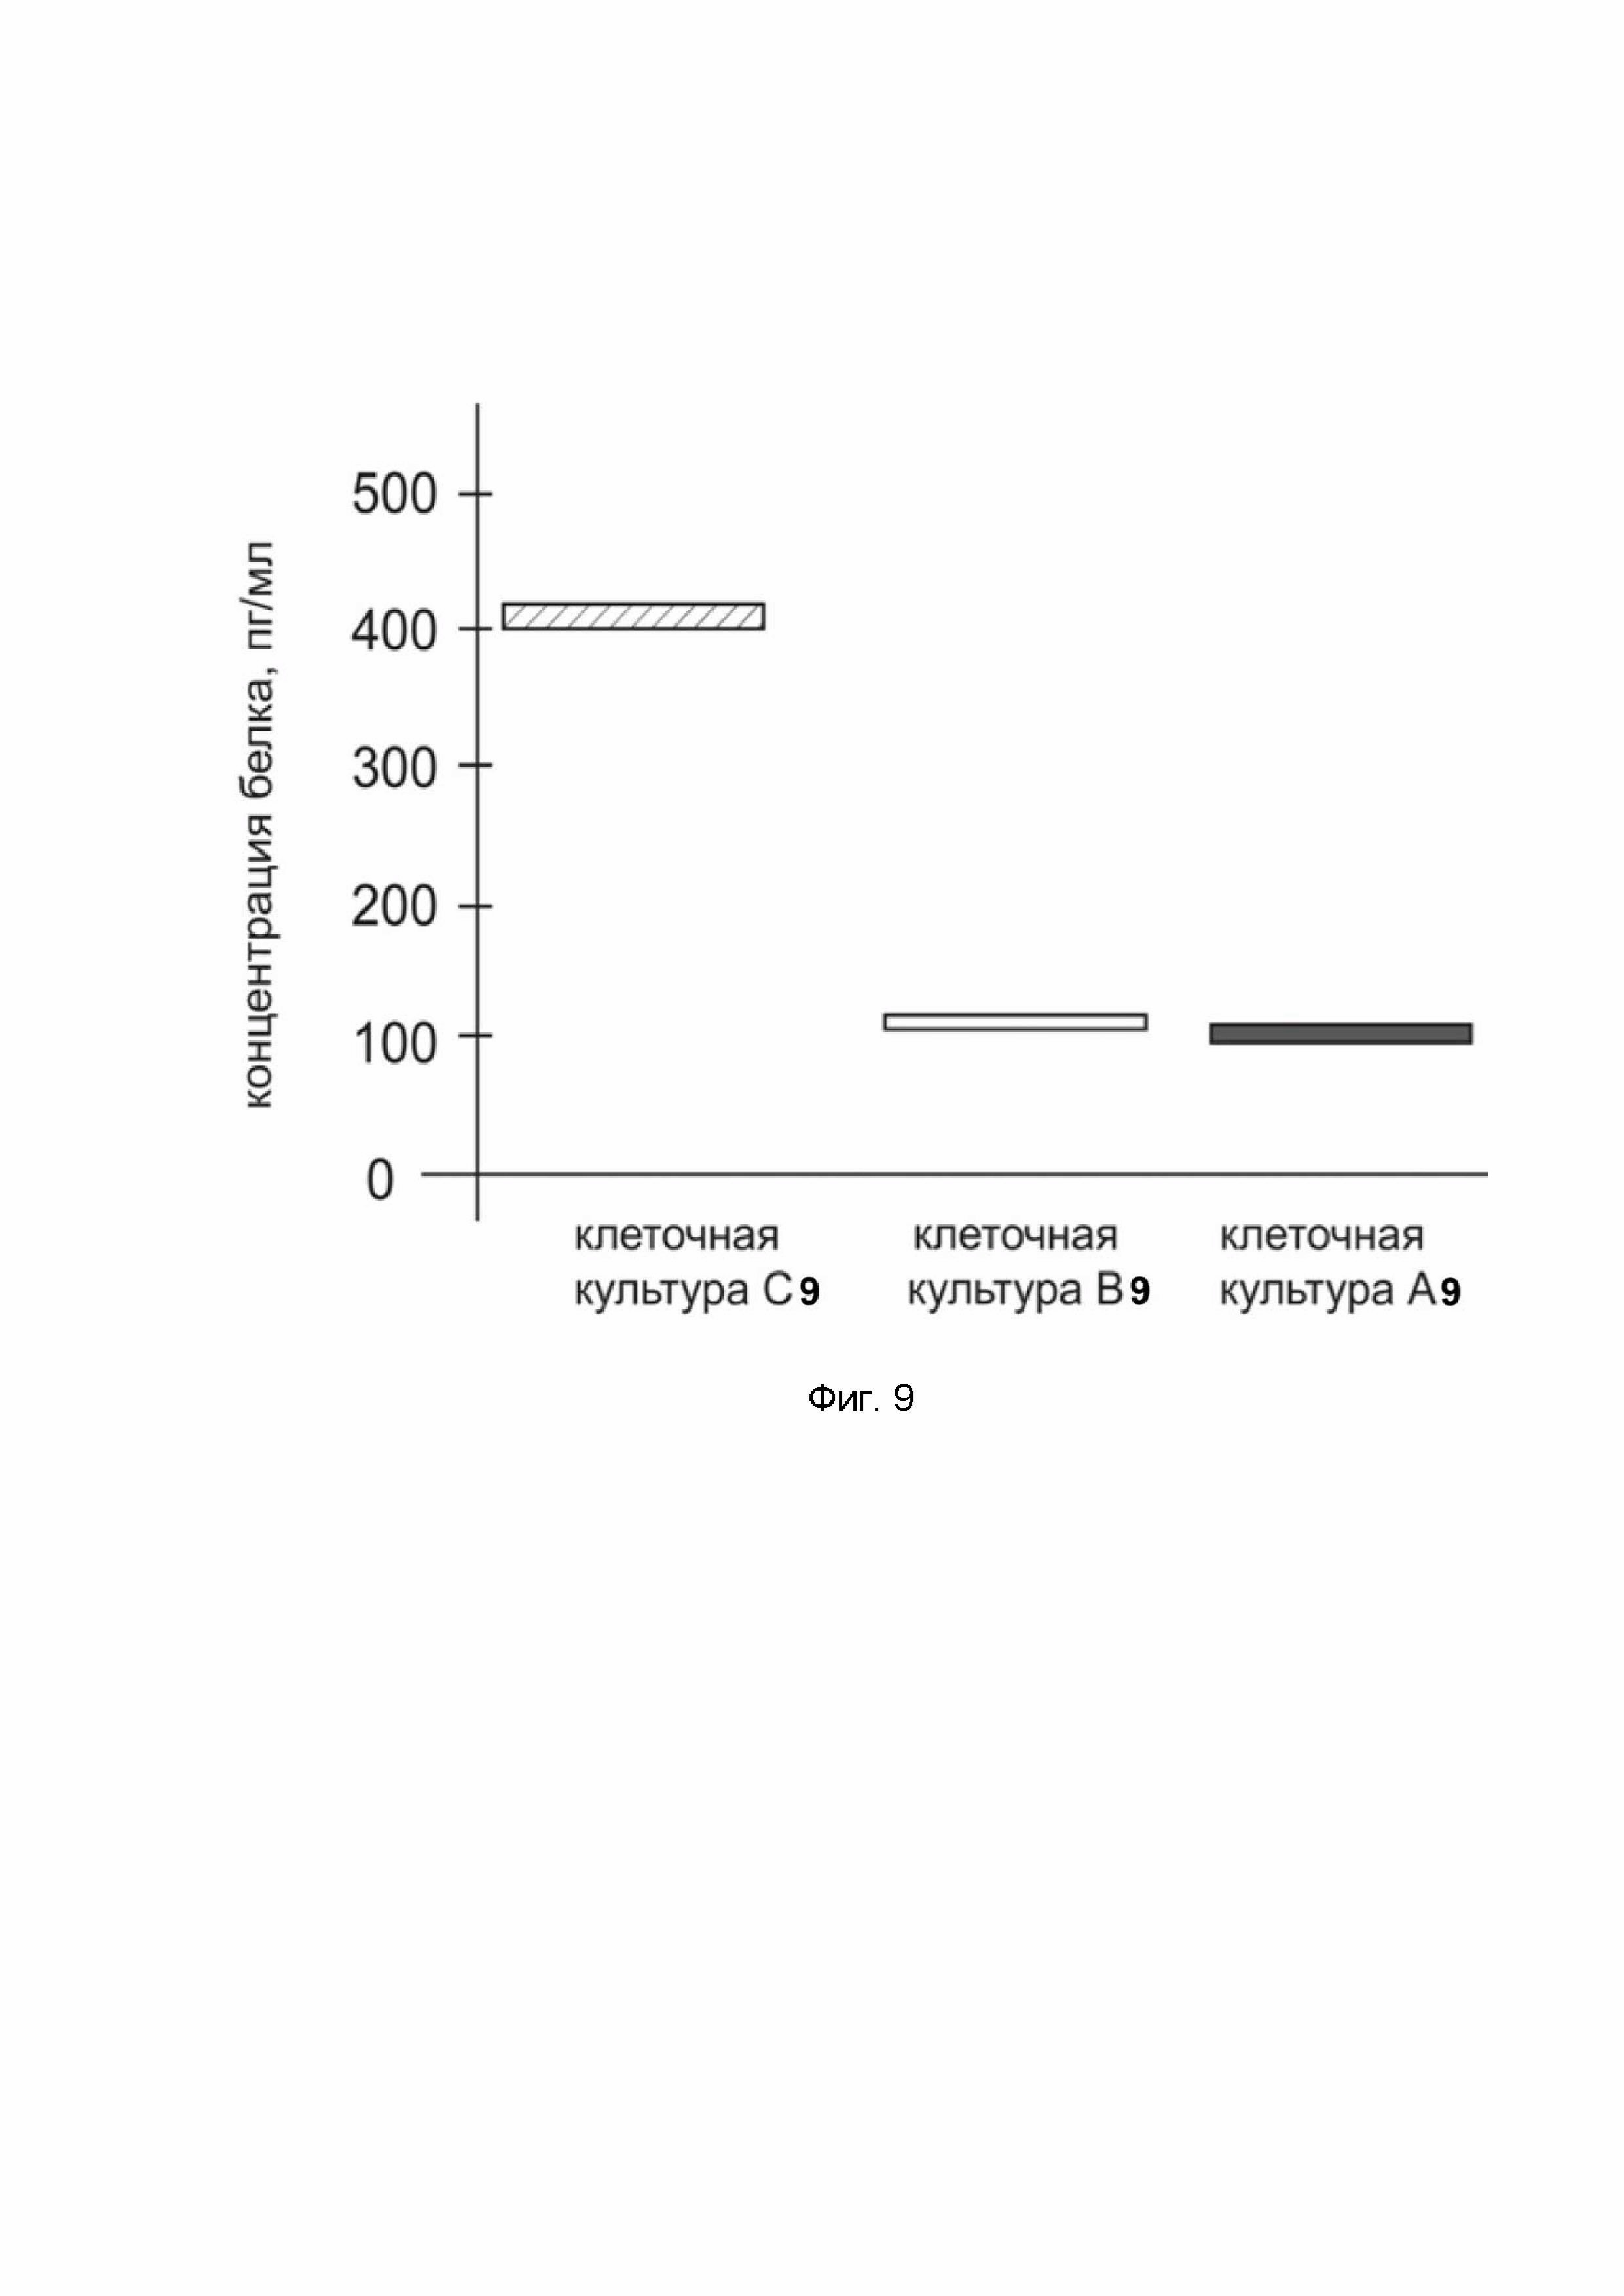 ДНК-вектор GDTT1.8NAS12-ANGPT1 для повышения уровня экспрессии целевого гена ANGPT1, способ его получения и применения